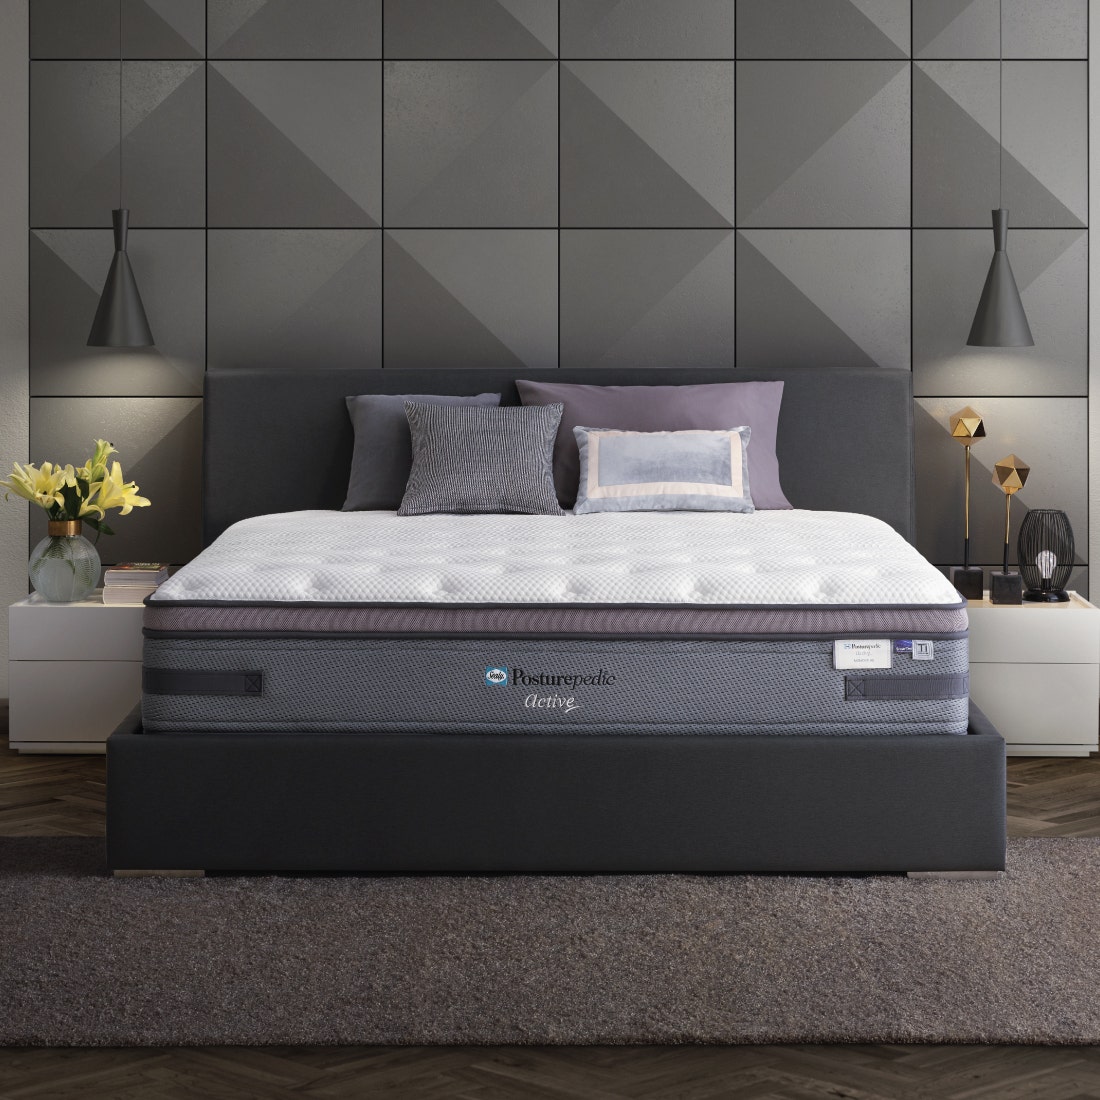 39011529-mattress-bedding-mattresses-spring-mattresses-31